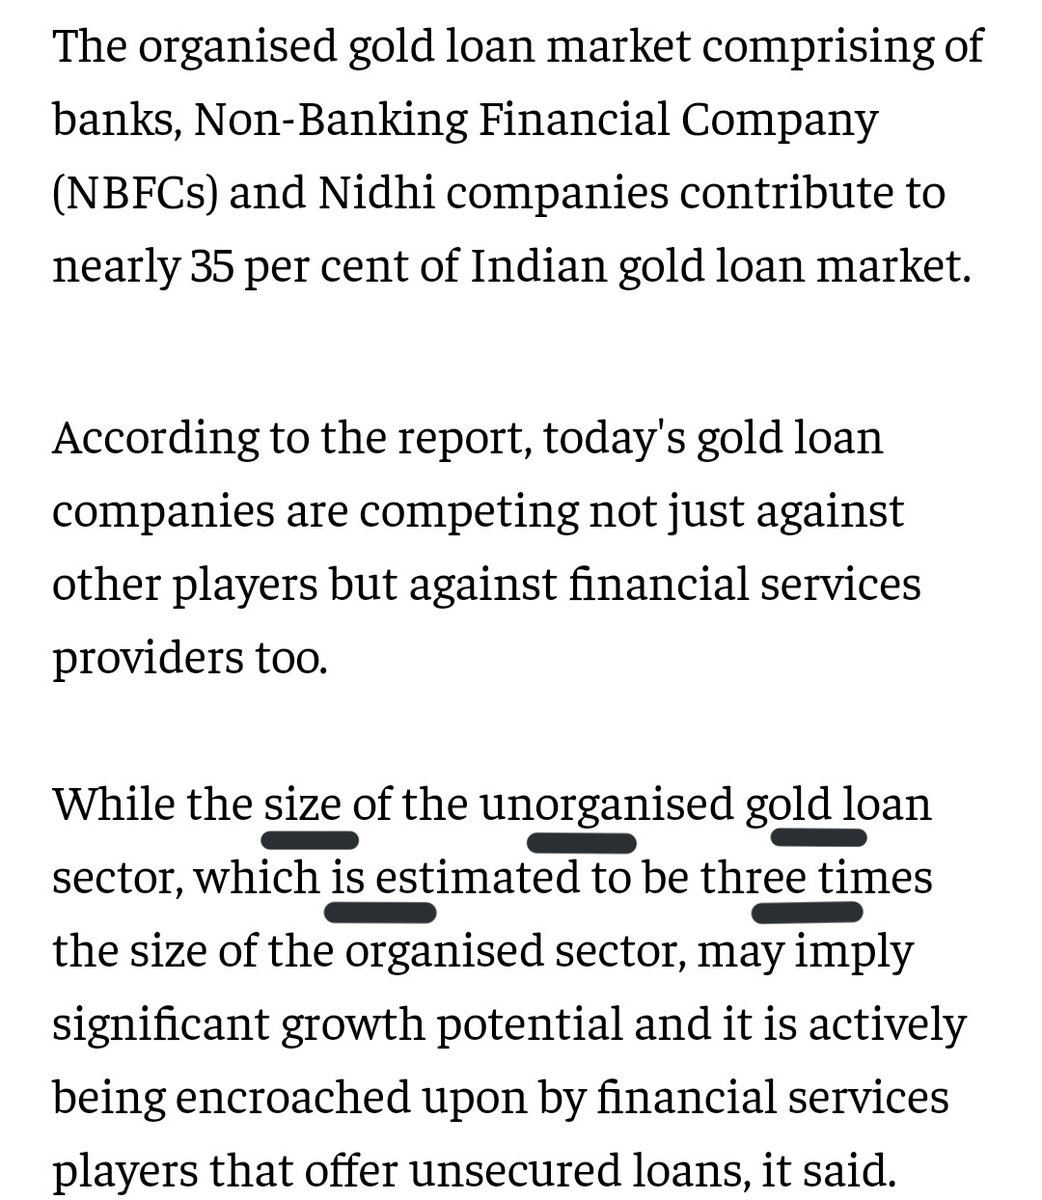 இன்றைக்கு அதிகப்படியான தங்கநகை கடன் வழங்கும் நிறுவனங்கள் (Gold Loan Companies)உள்ள மாநிலங்களில் தமிழகமும் ஒன்று.!இதுக்கெல்லாம் விதை இவங்க போட்டது தான்.எல்லாம் சரி,யார் இவங்க.!நன்றி மக்களே.! @sArAvAnA_15  @teakkadai1 @gcybertron  @aram_Gj  @Ganesh_Twitz @Narayanramsubbu